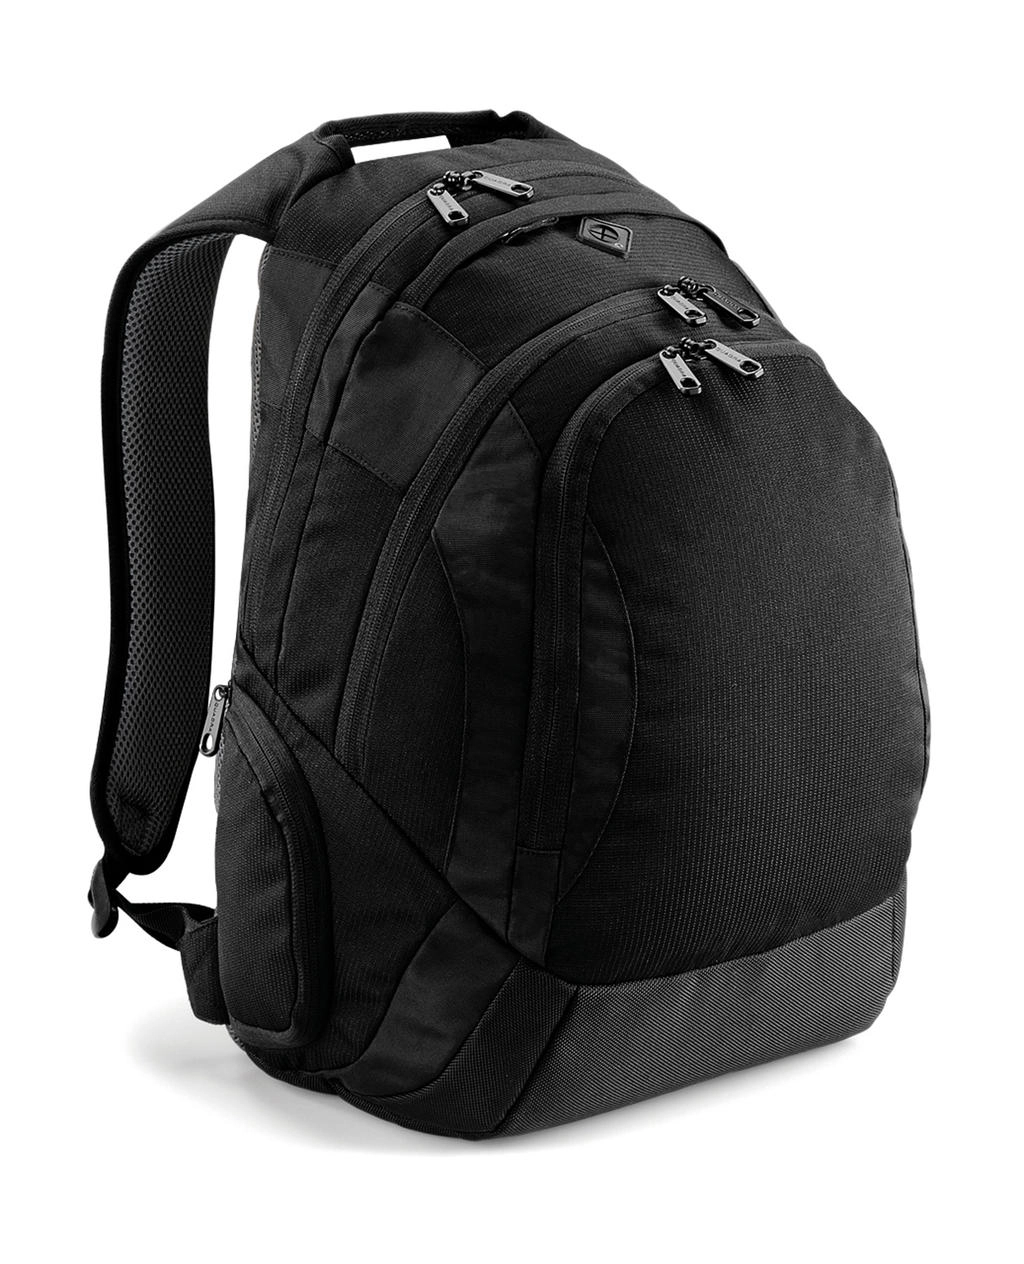 Vessel™ Laptop Backpack zum Besticken und Bedrucken in der Farbe Black mit Ihren Logo, Schriftzug oder Motiv.